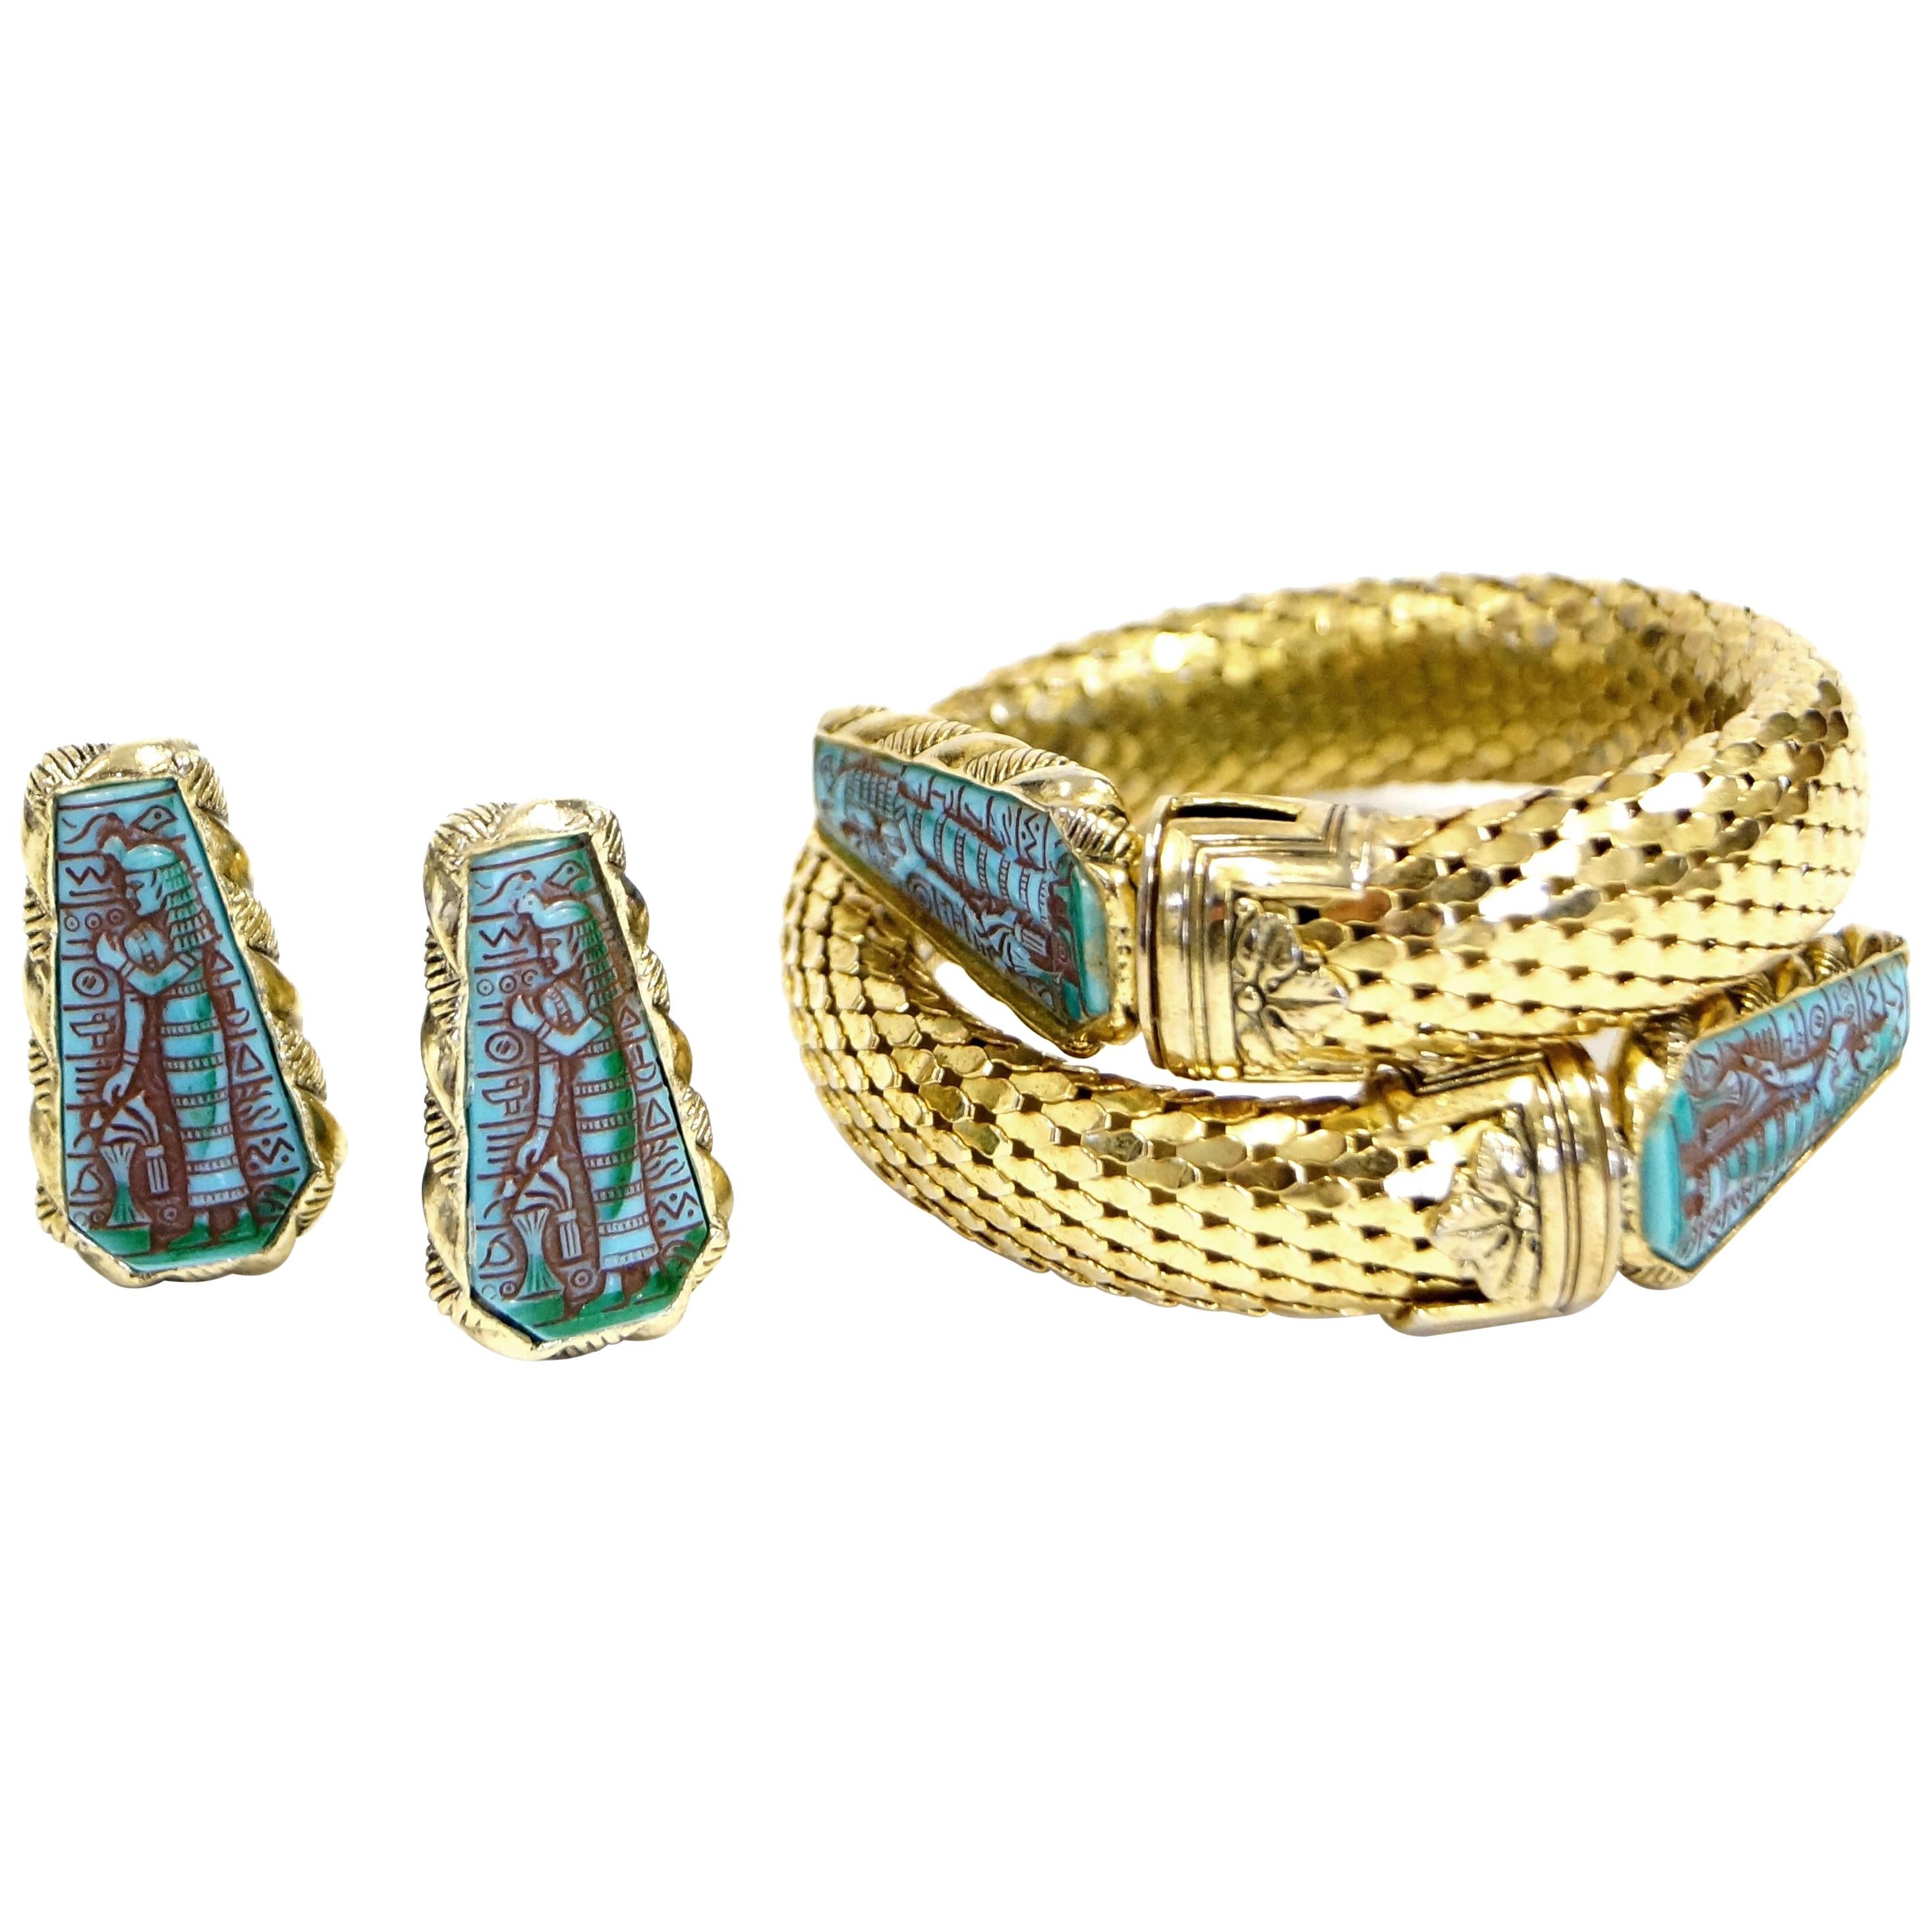 1970s Whiting & Davis Egyptian Revival Pharaoh Bracelet and Earrings For Sale